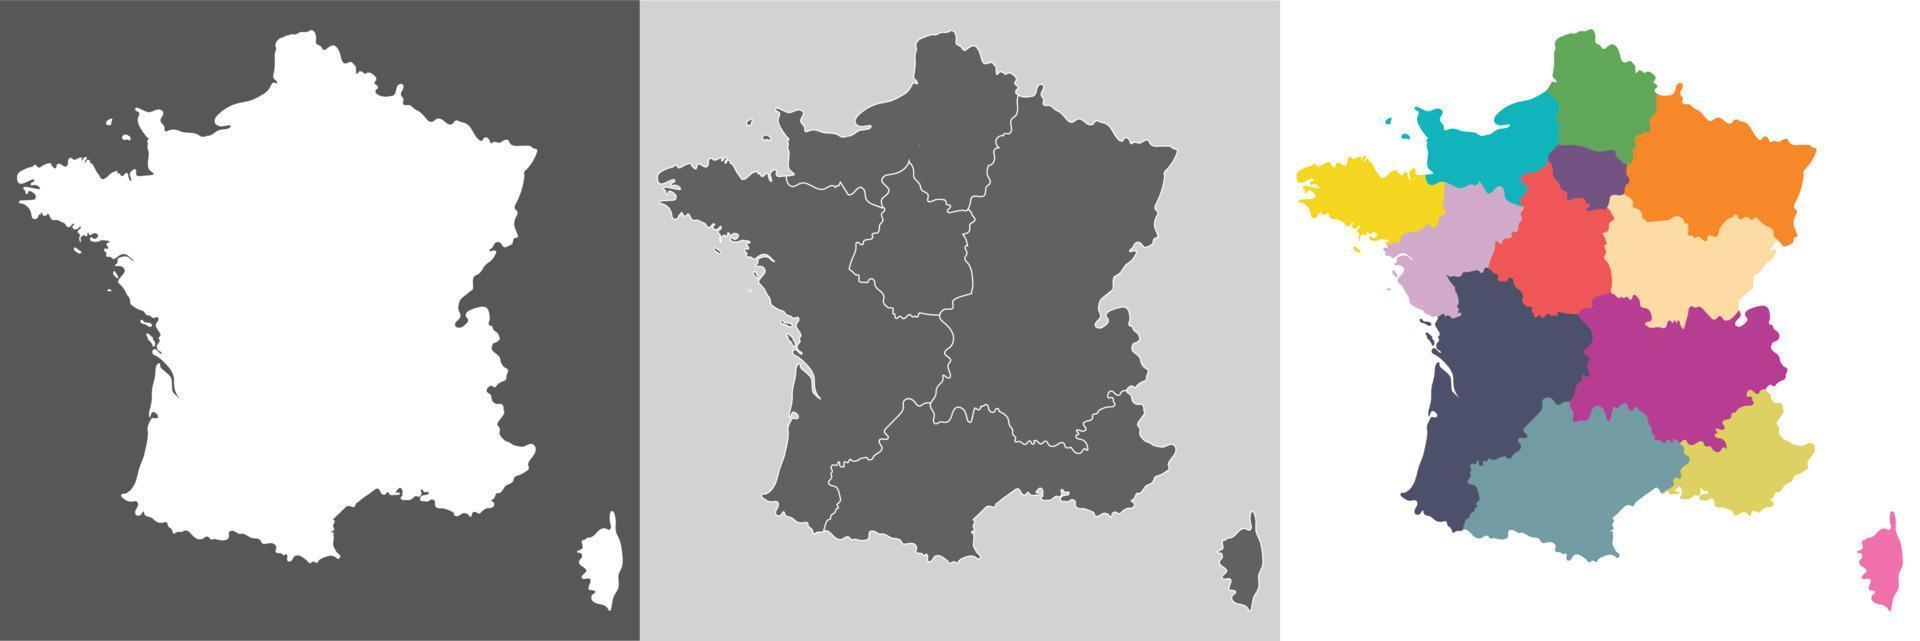 Frankreich Französisch Karte einstellen mit Weiss, grau und Mehrfarbig Aufteilung Regionen umfassen vektor